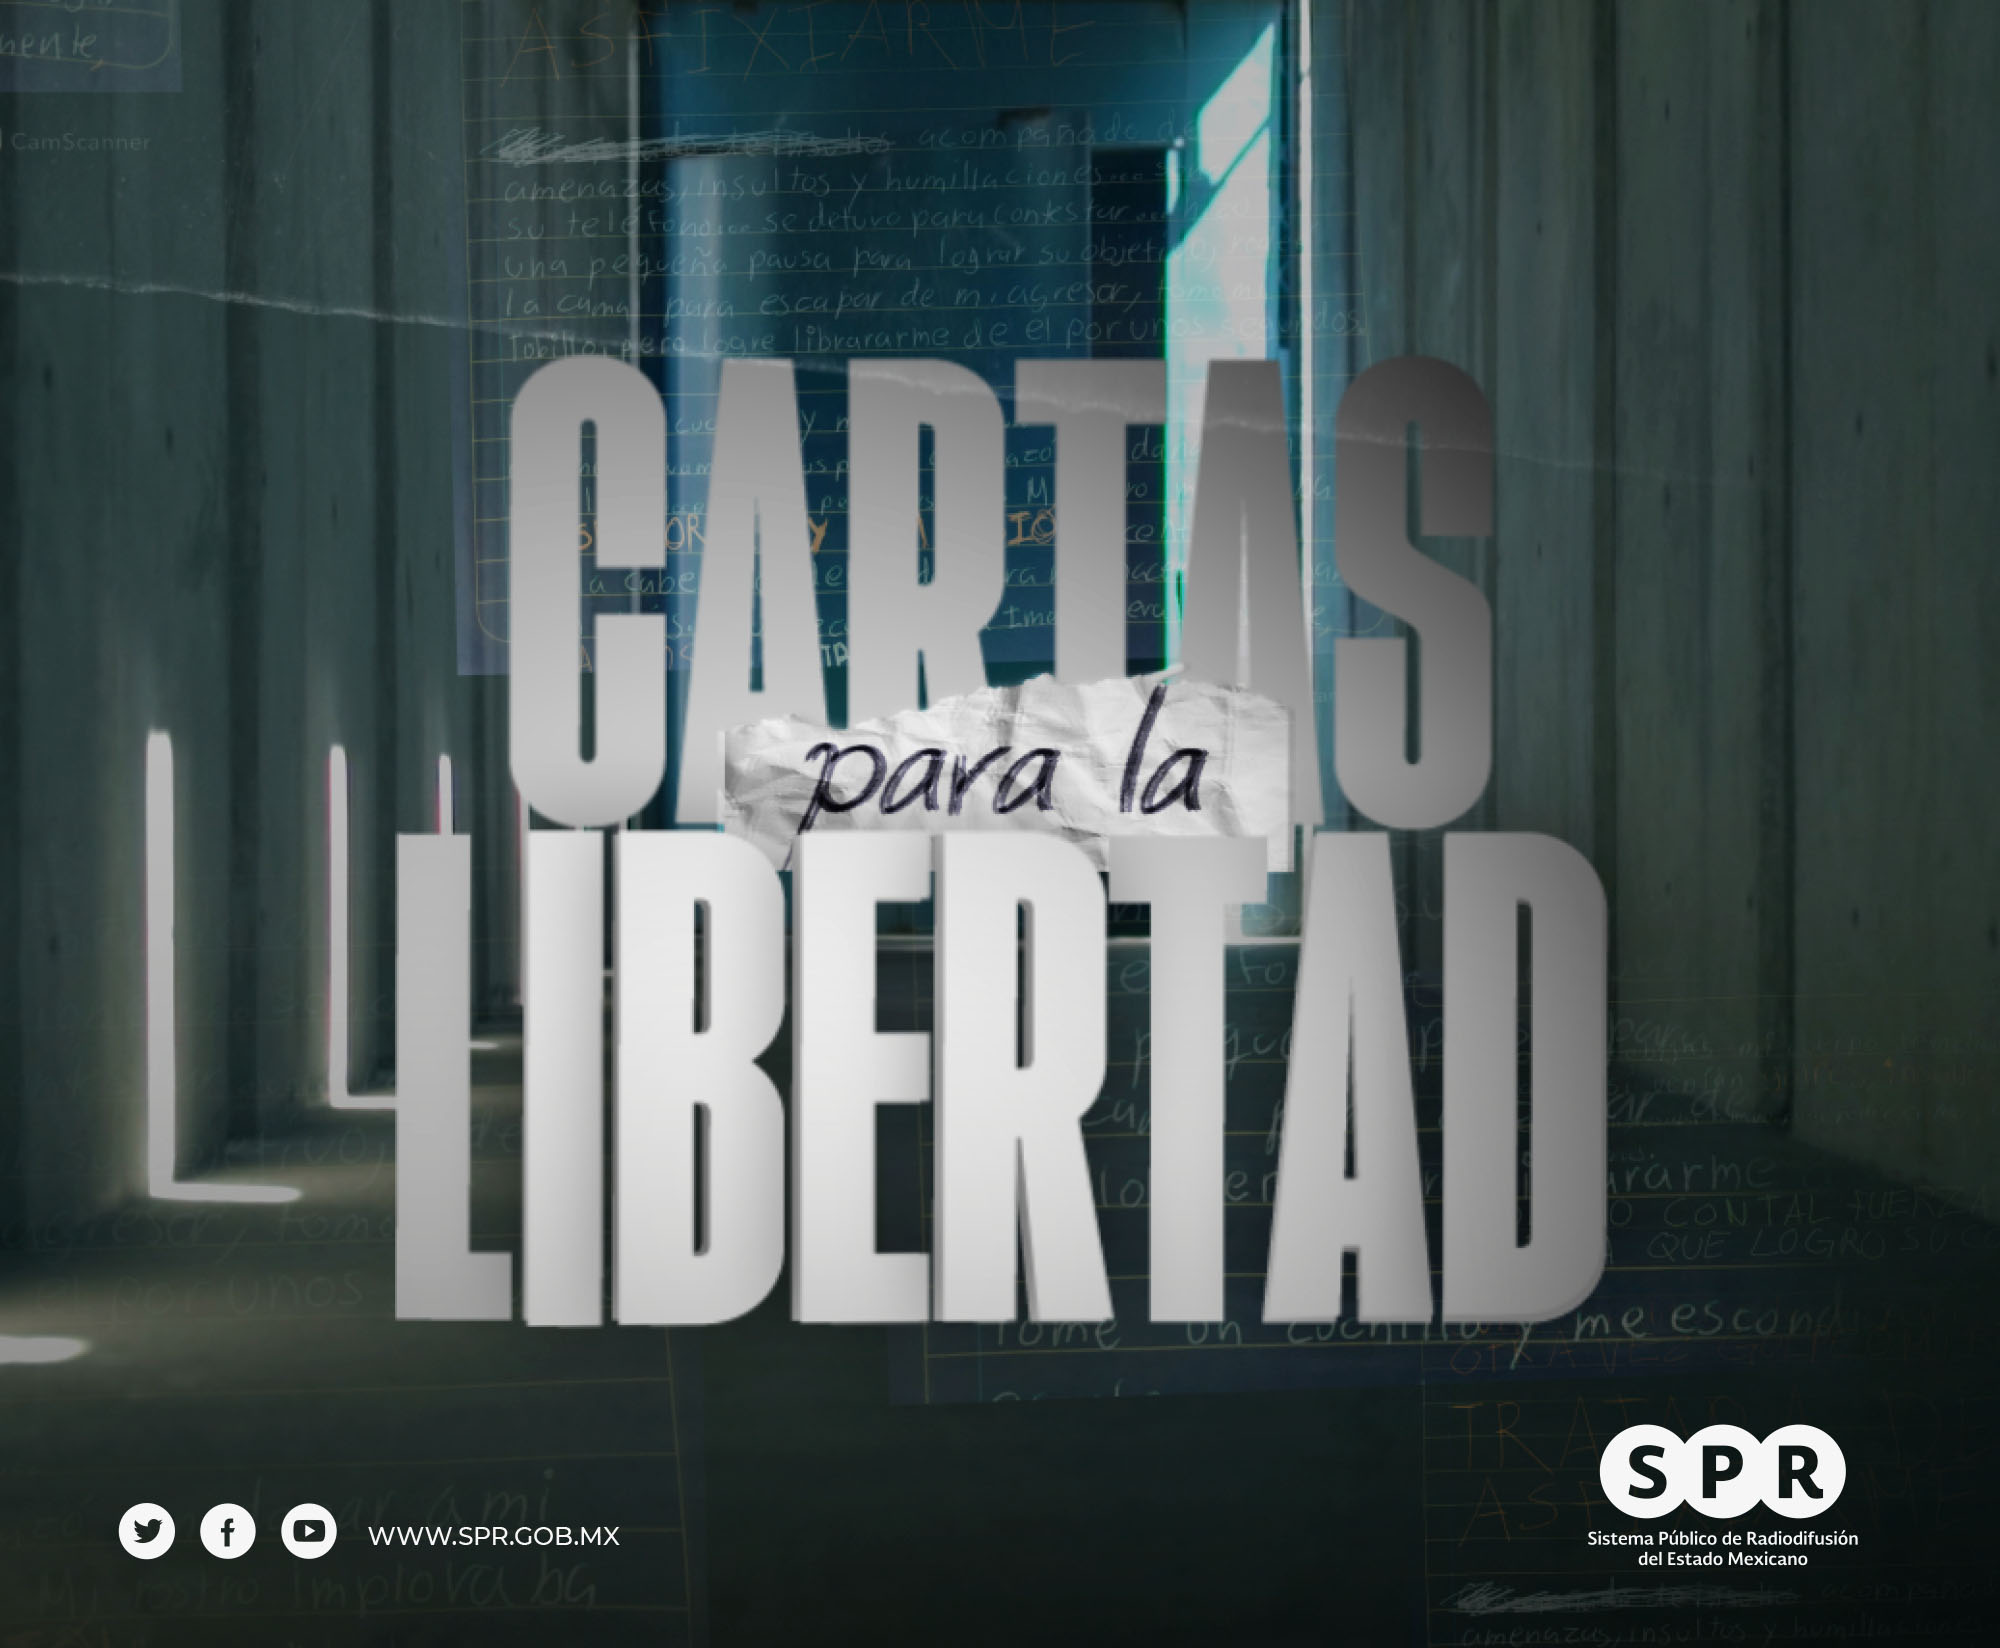 Canal Catorce del SPR estrena este sábado 25 de marzo, a las 09:30 p.m., la serie “Cartas para la libertad”